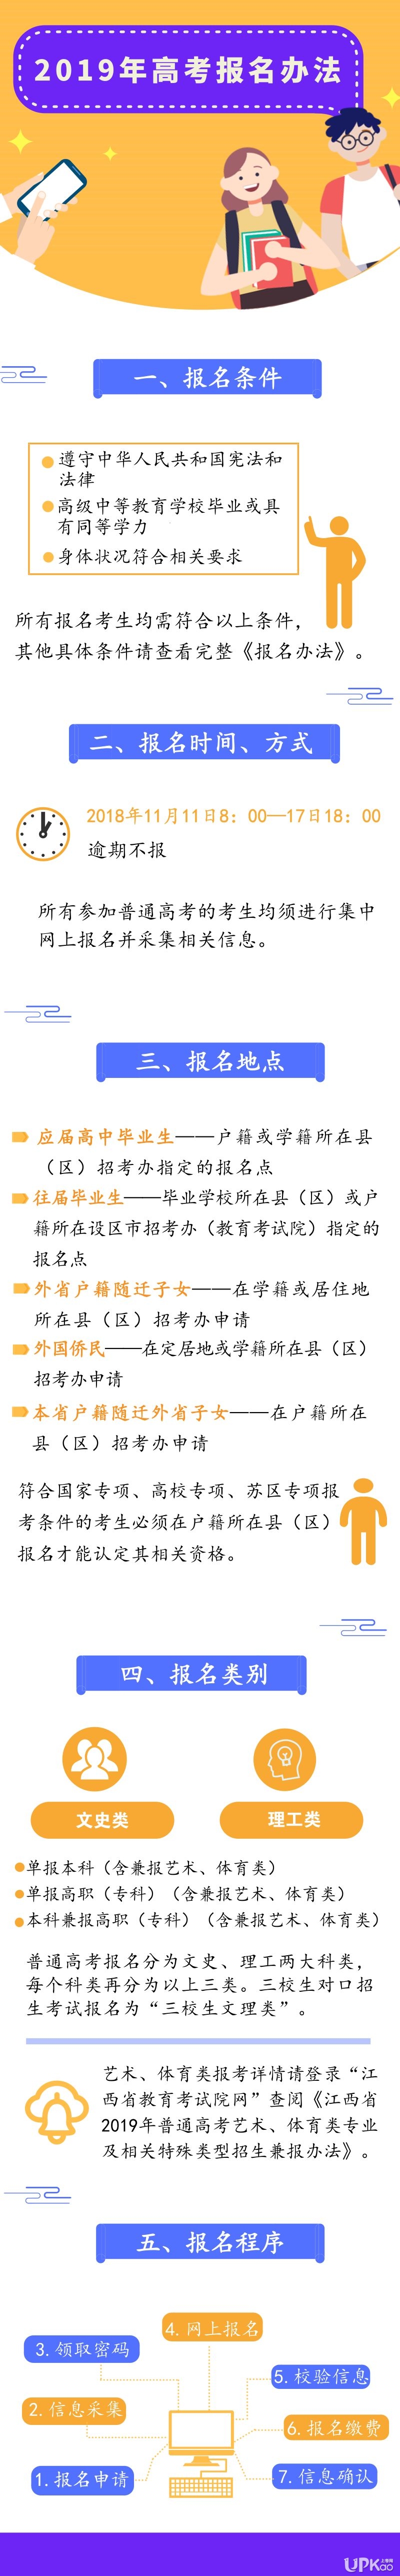 www.jxeea.cn 江西省2018年高考报名网站